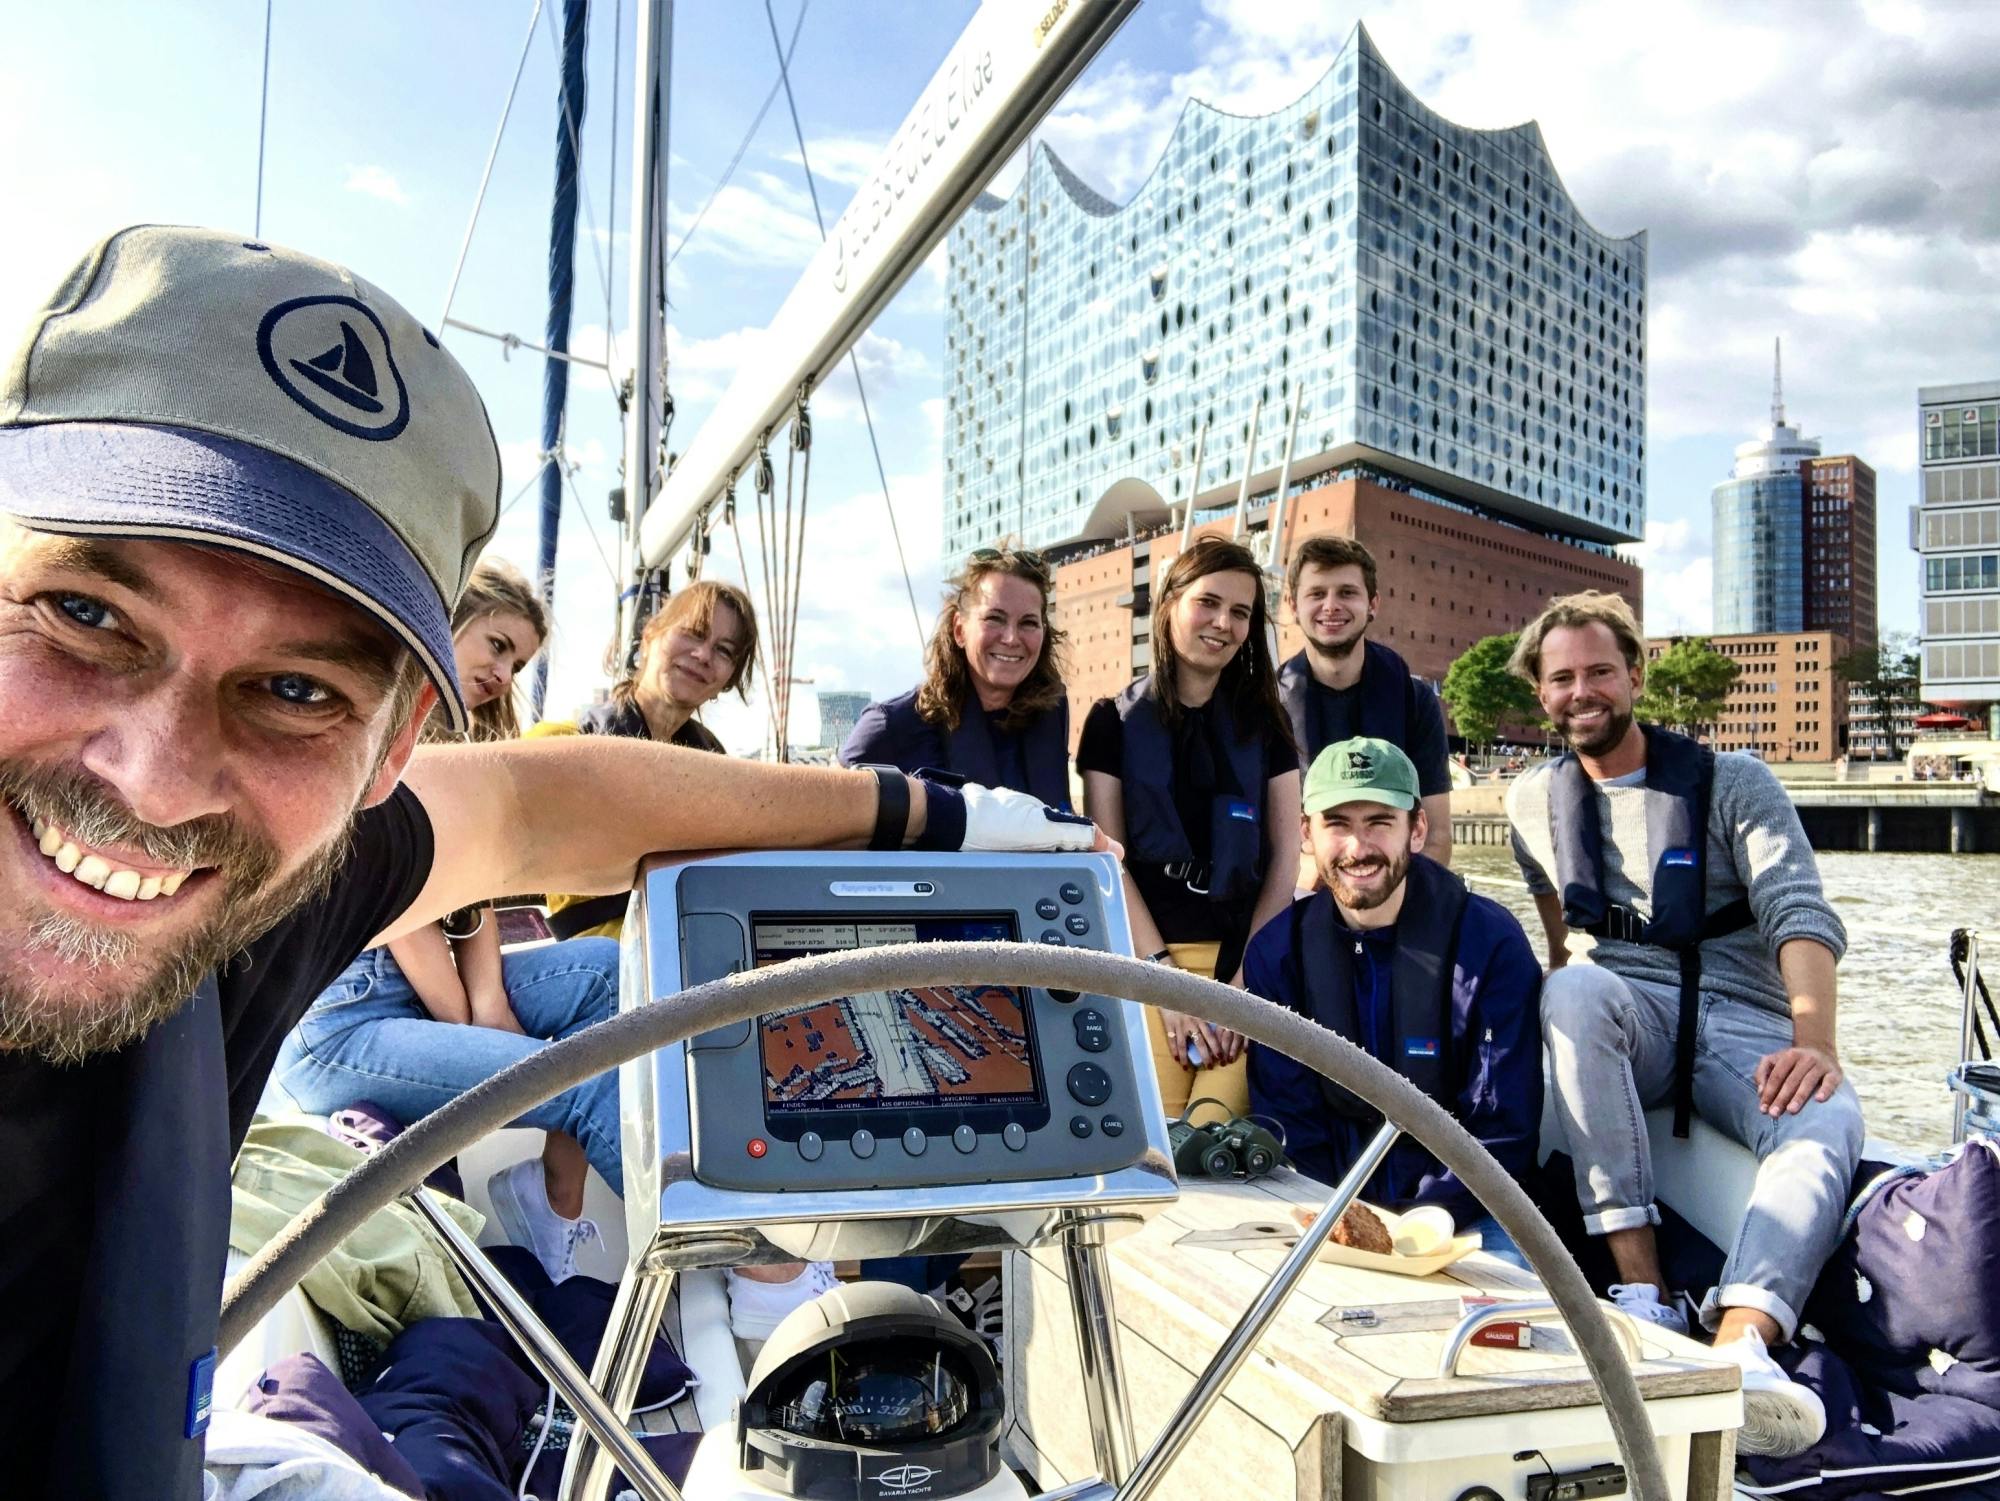 Żeglowanie w porcie w Hamburgu Yacht Experience